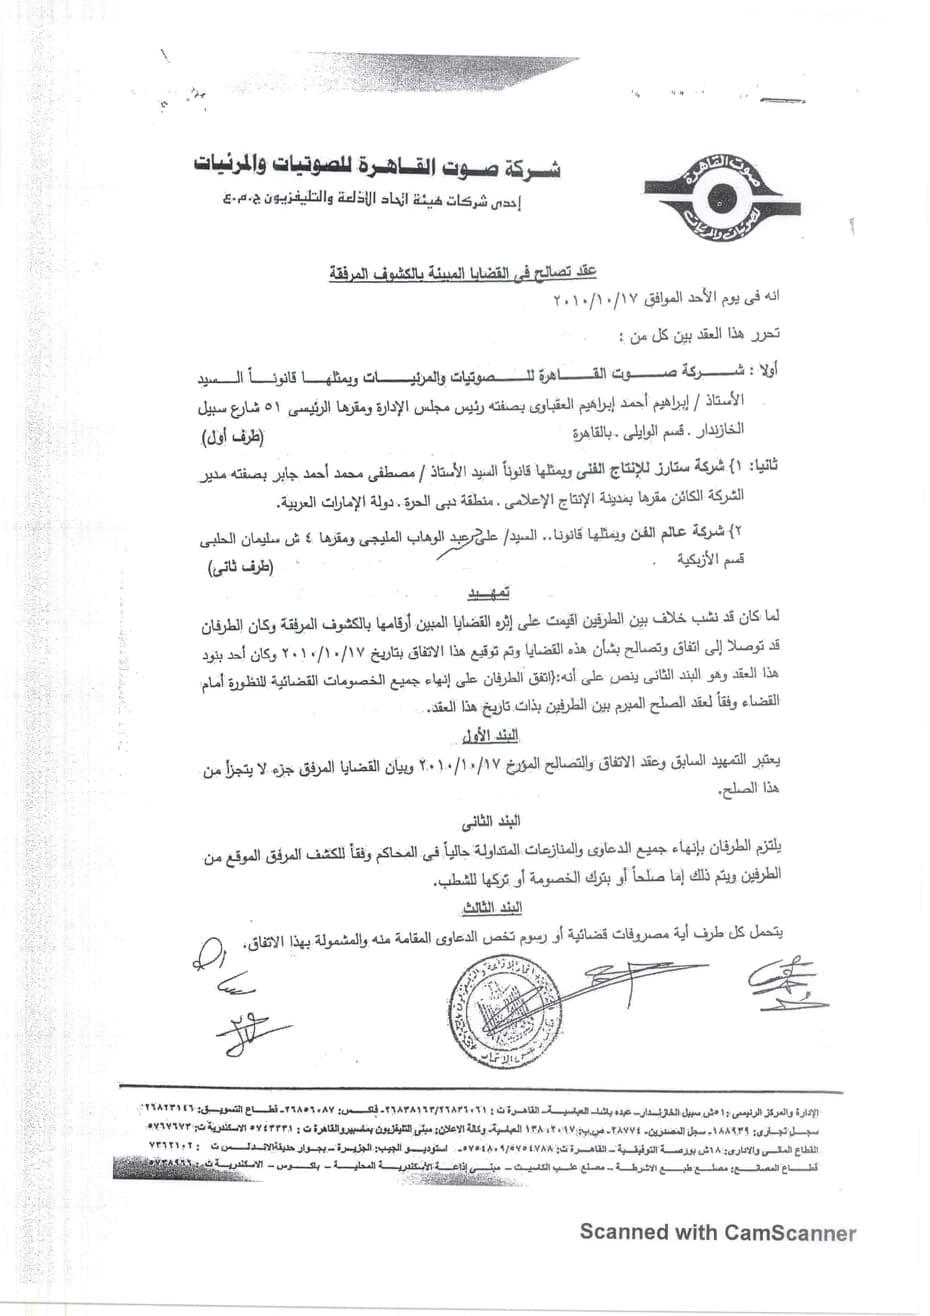 بالمستندات.. "صوت القاهرة" تصدر بيانا جديدا حول أزمة حقوق استغلال أغاني أم كلثوم  